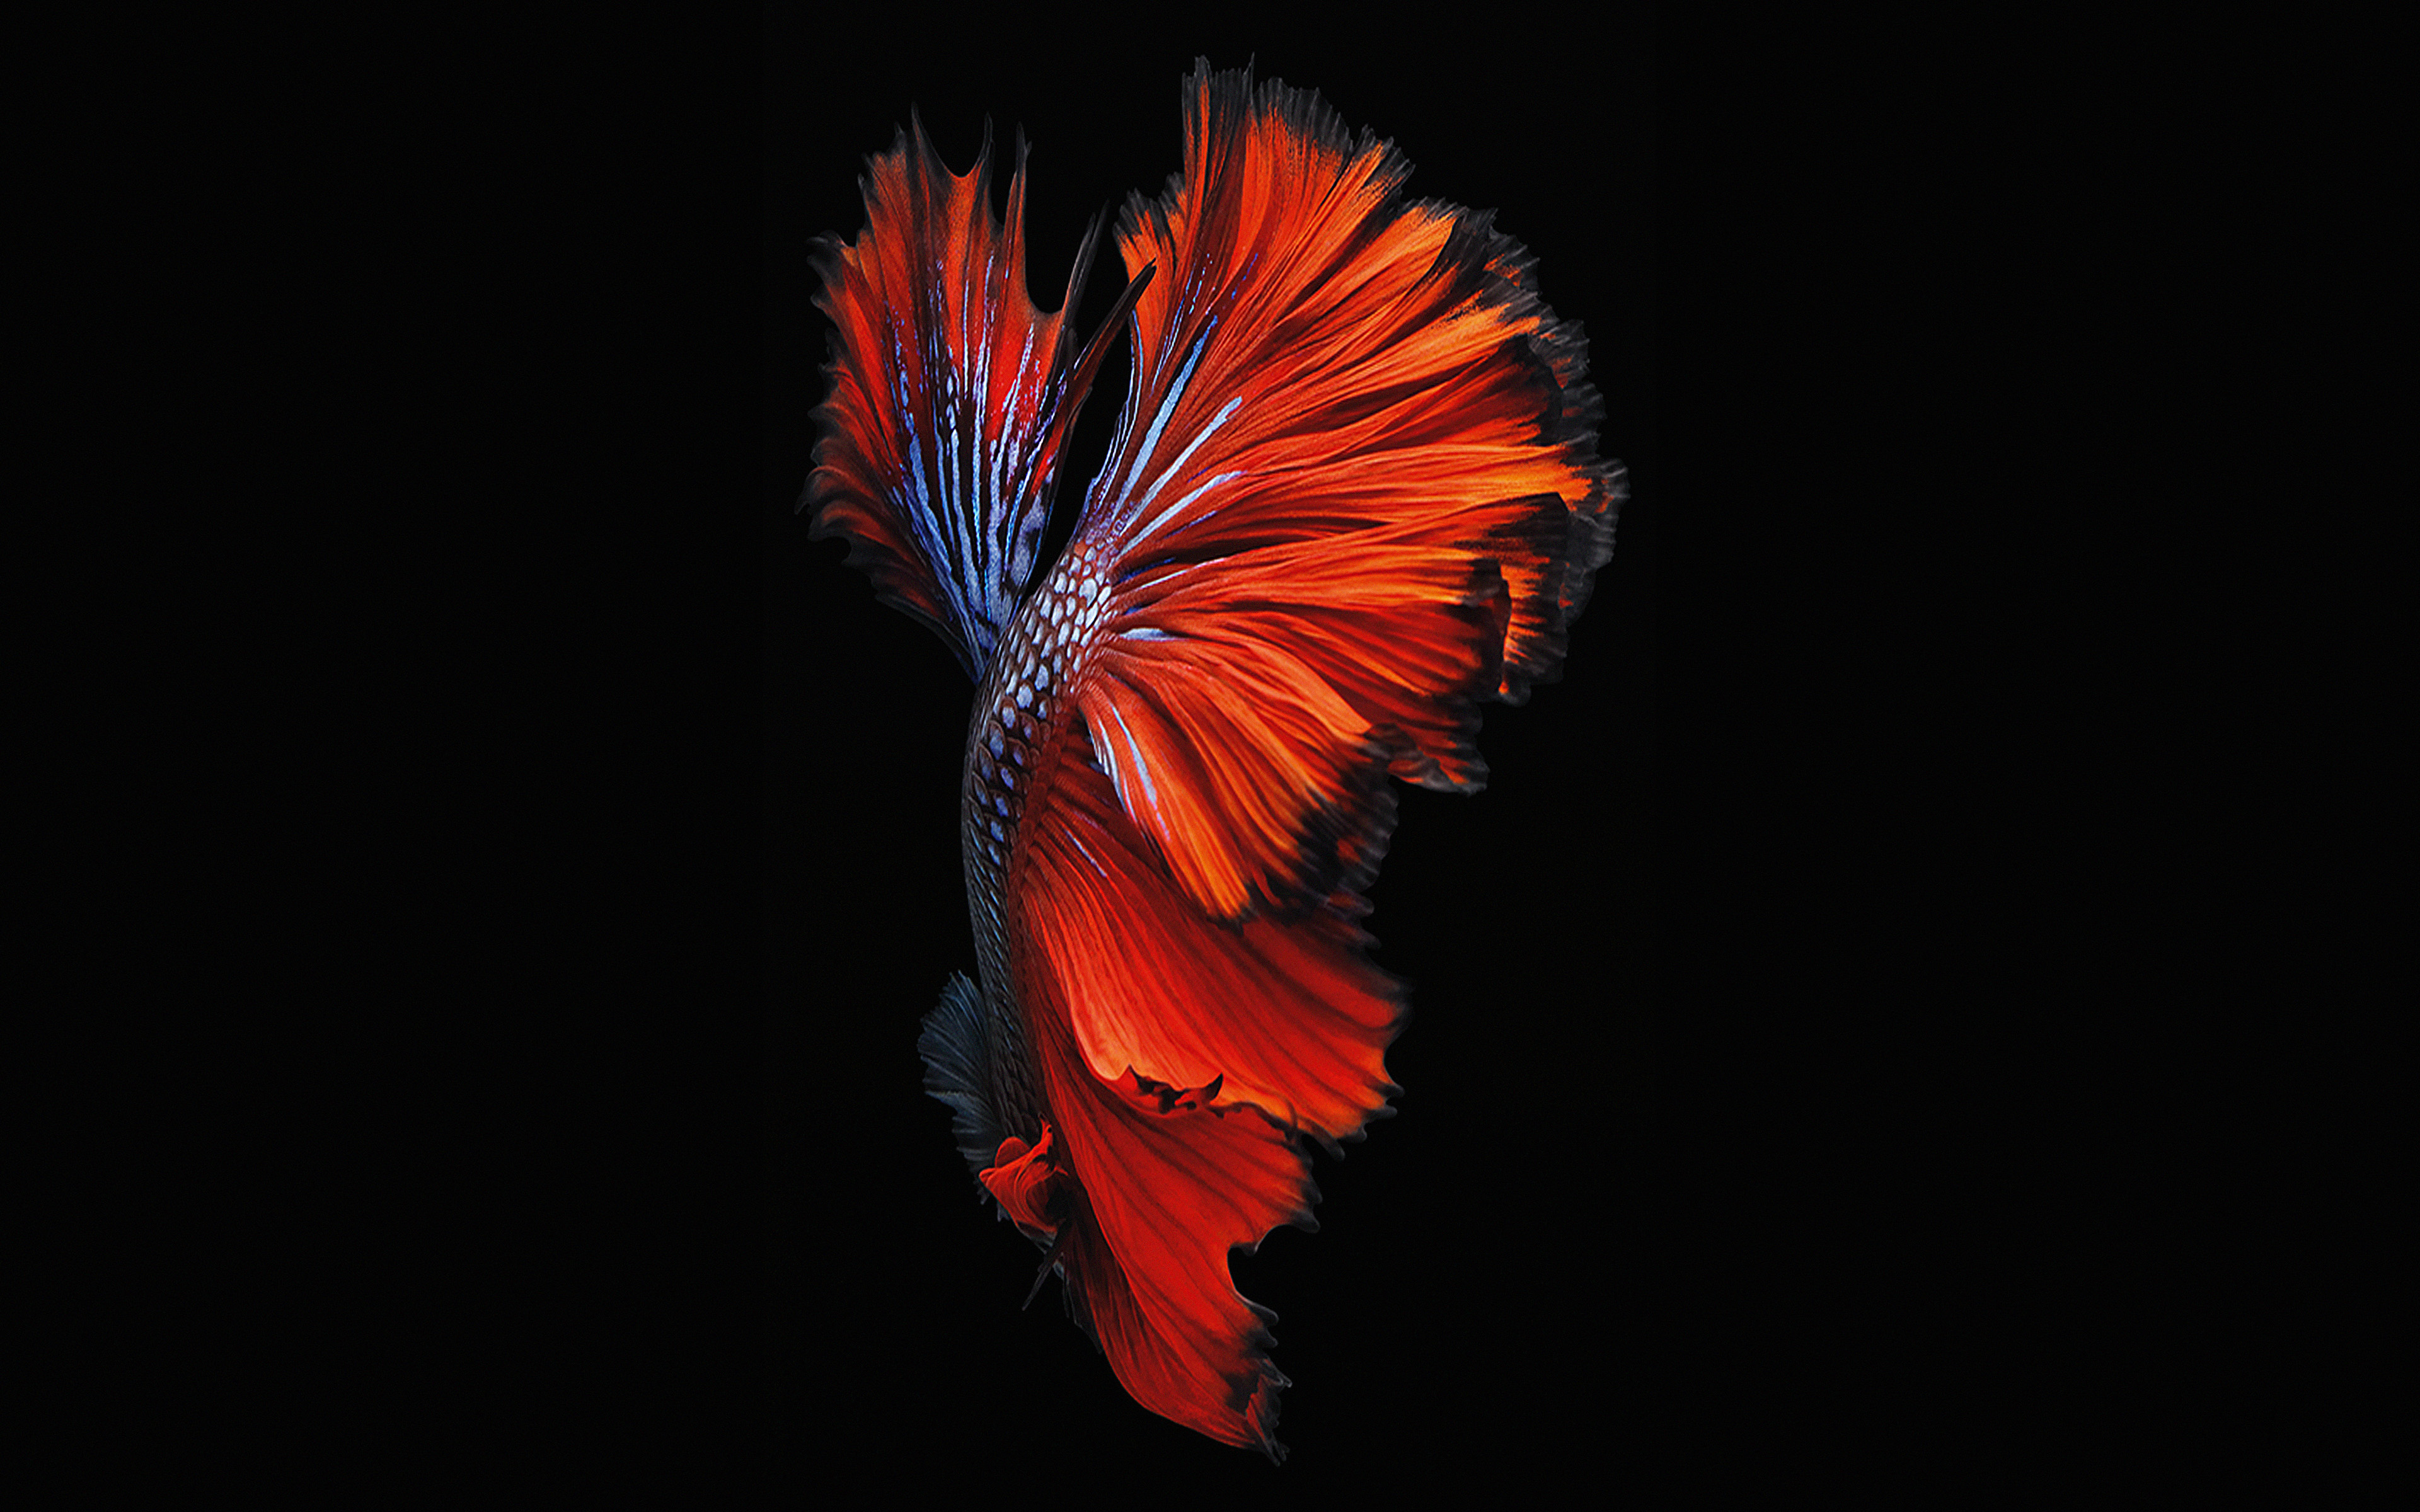 fond d'écran poisson iphone,orange,rouge,la nature,plume,macro photographie